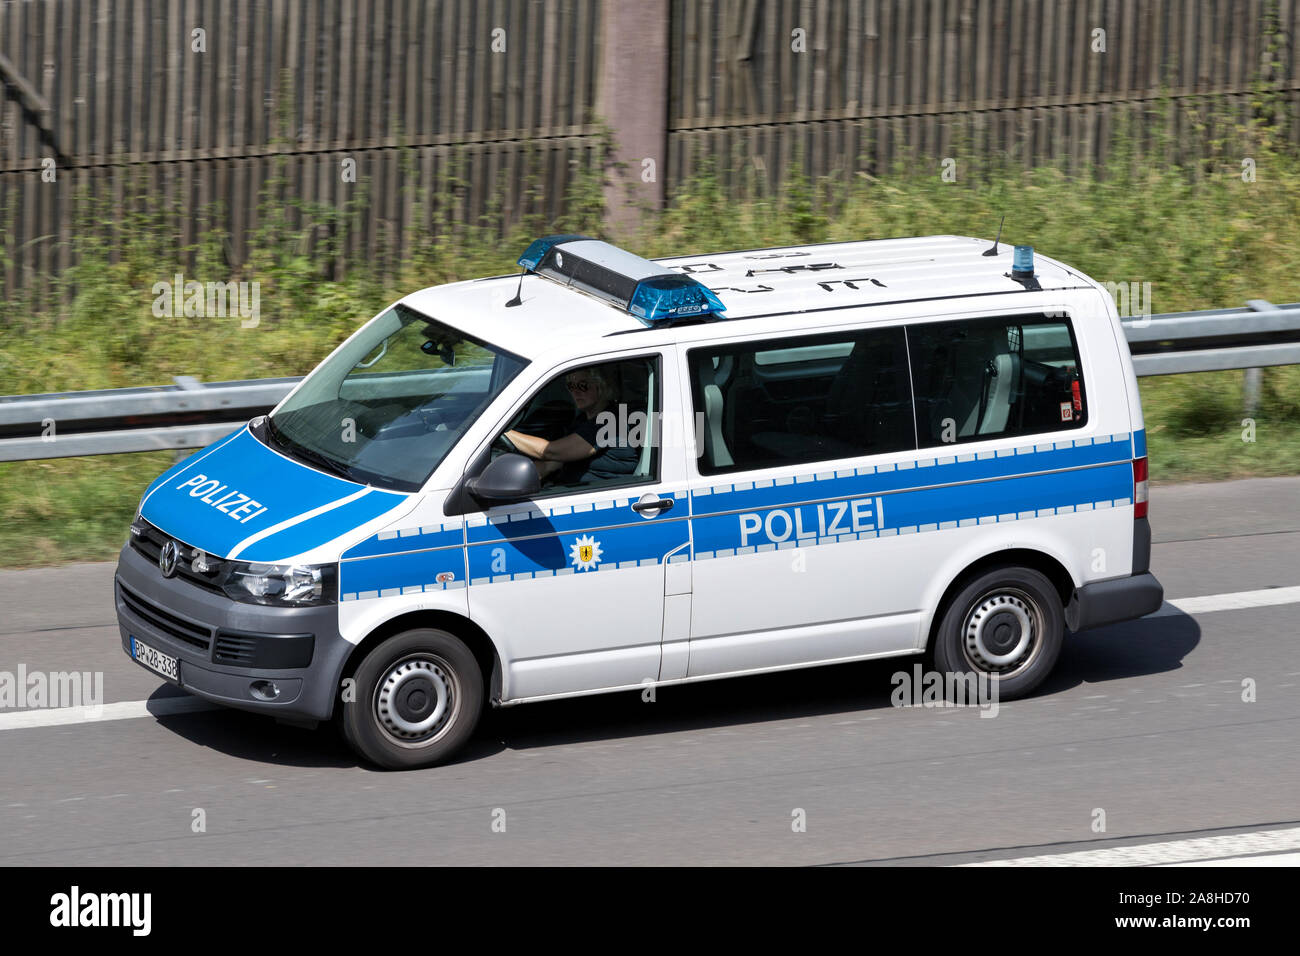 La Police fédérale (Bundespolizei allemande) Volkswagen Bus sur l'autoroute. Banque D'Images